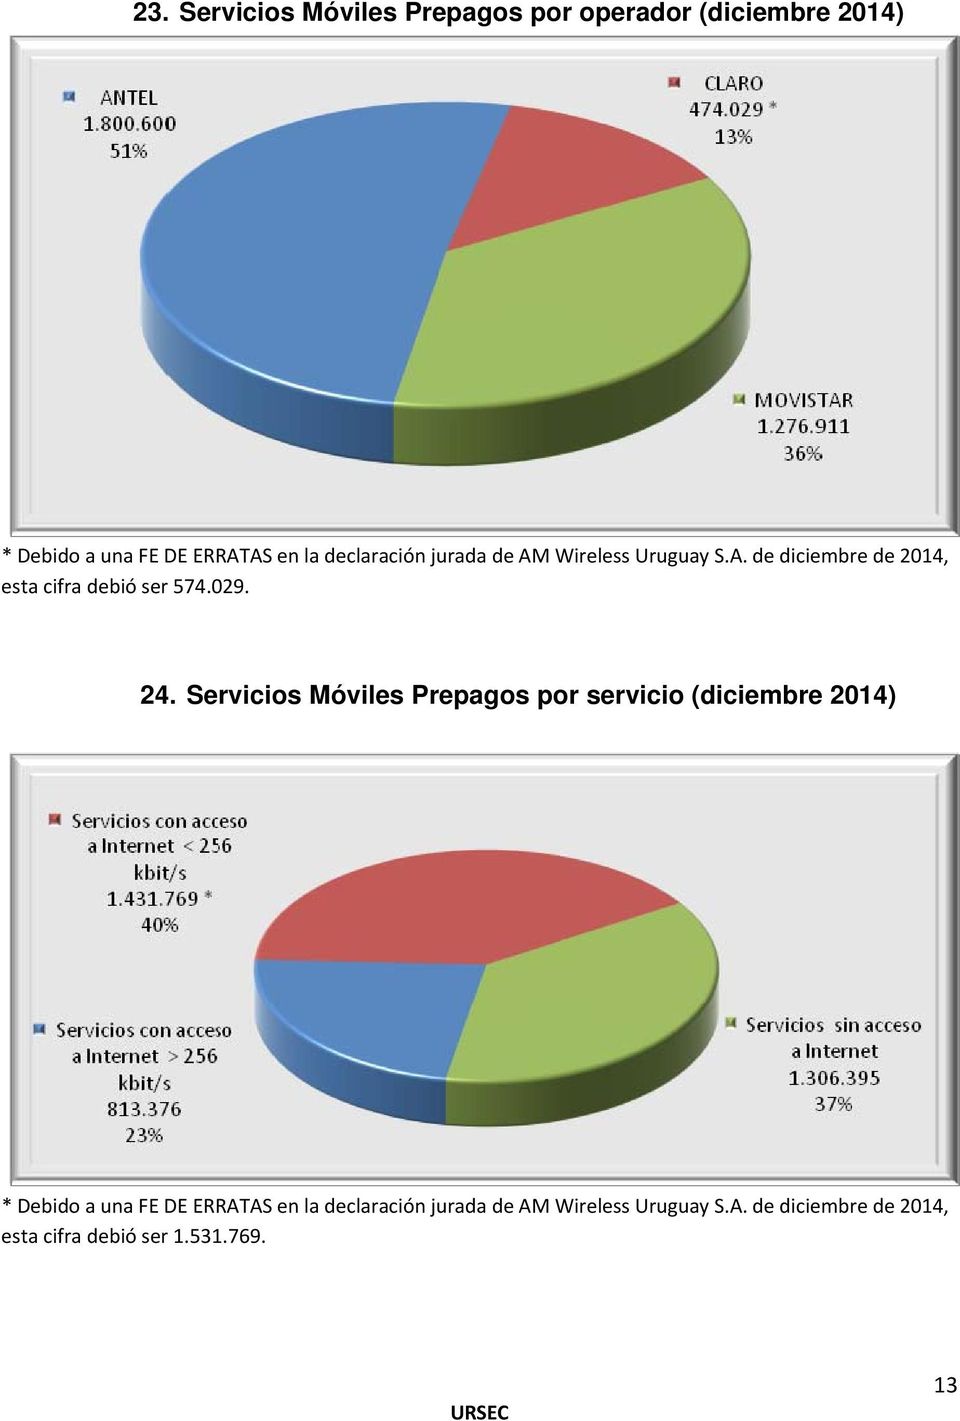 24. Servicios Móviles Prepagos por servicio (diciembre 2014) * Debido a una FE DE ERRATAS en la